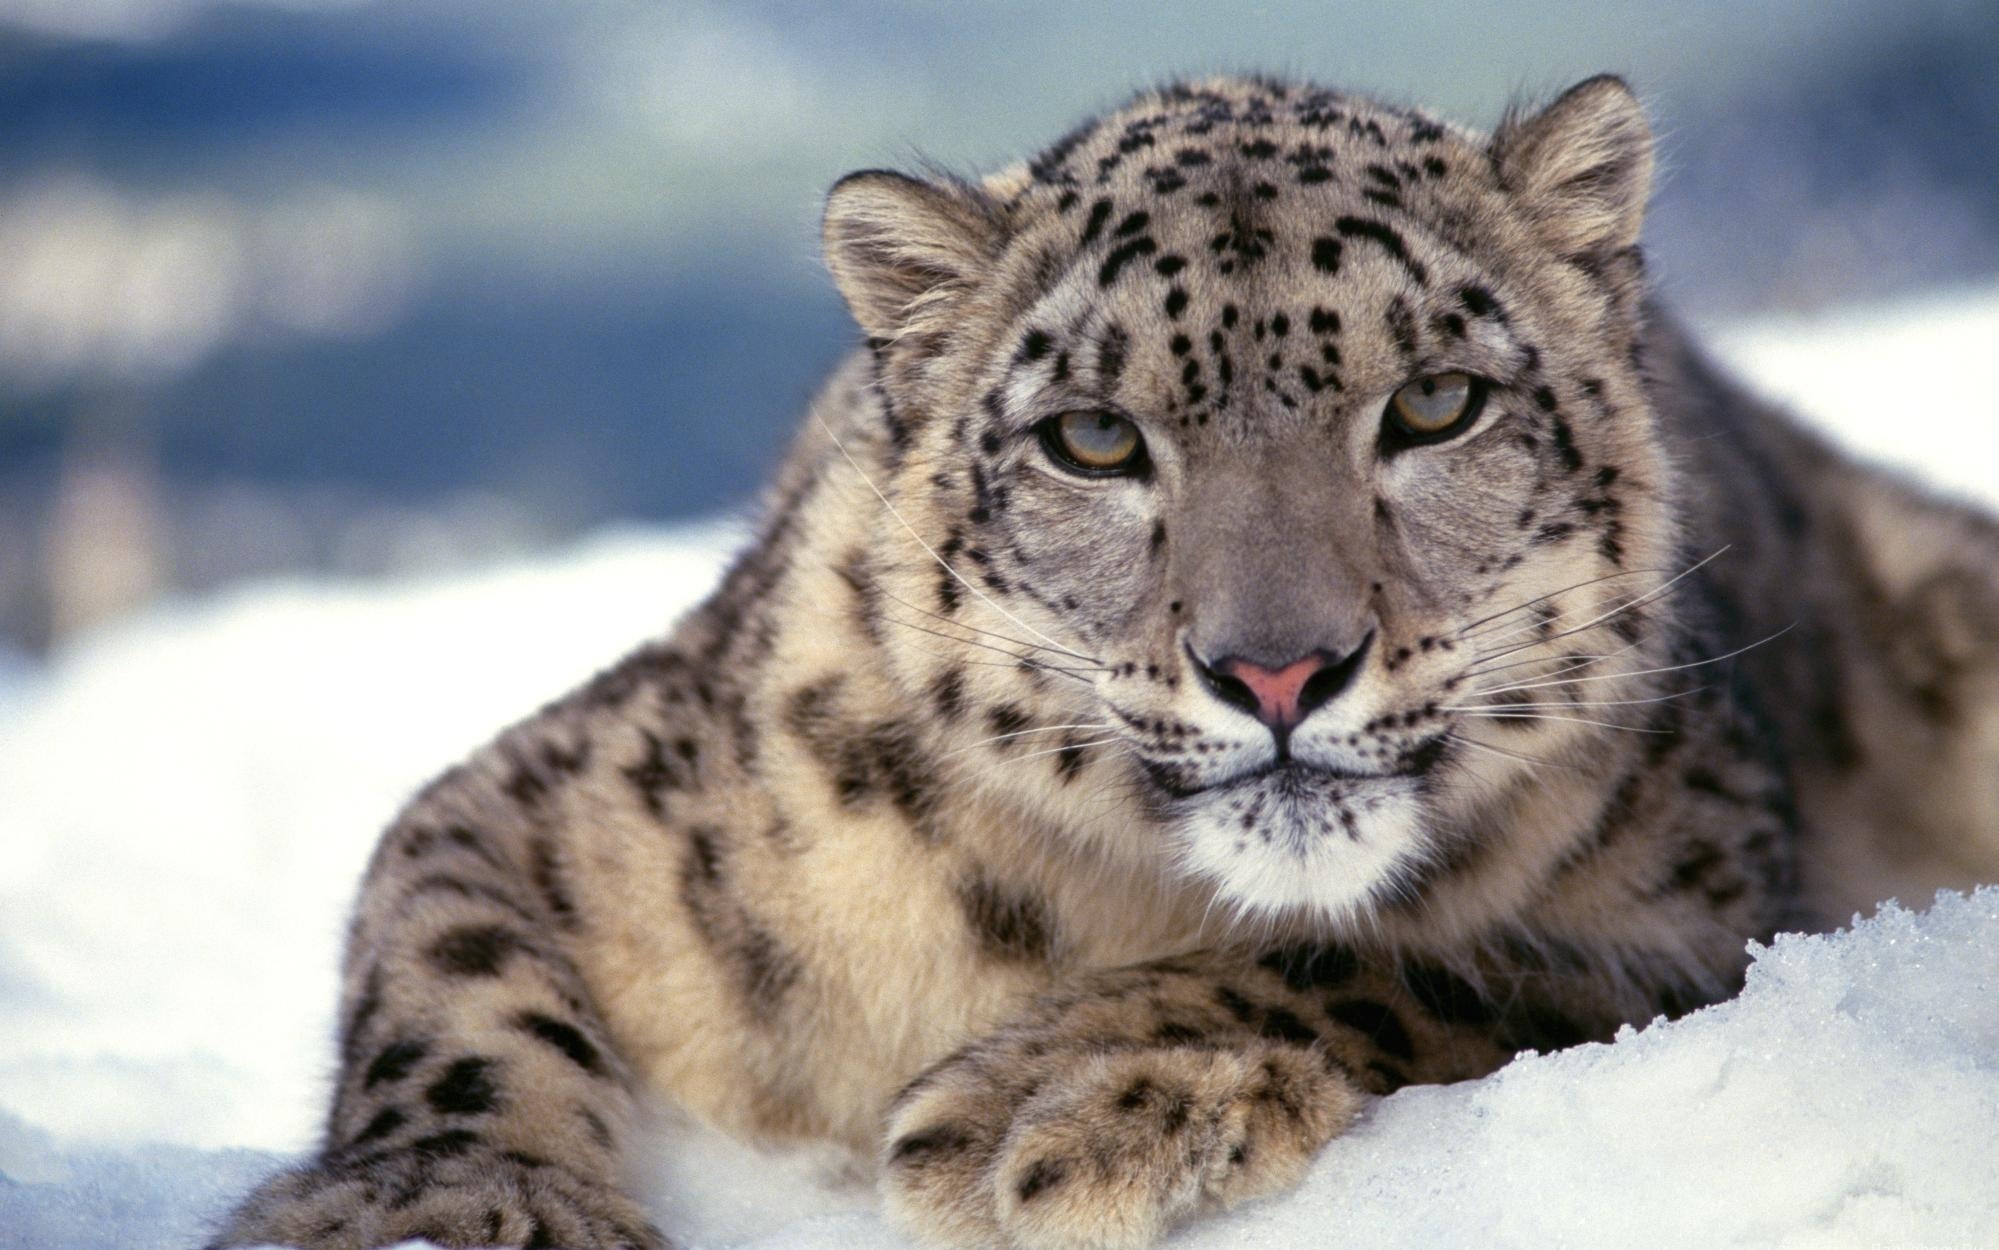 Descarga gratuita de fondo de pantalla para móvil de Animales, Leopardo.